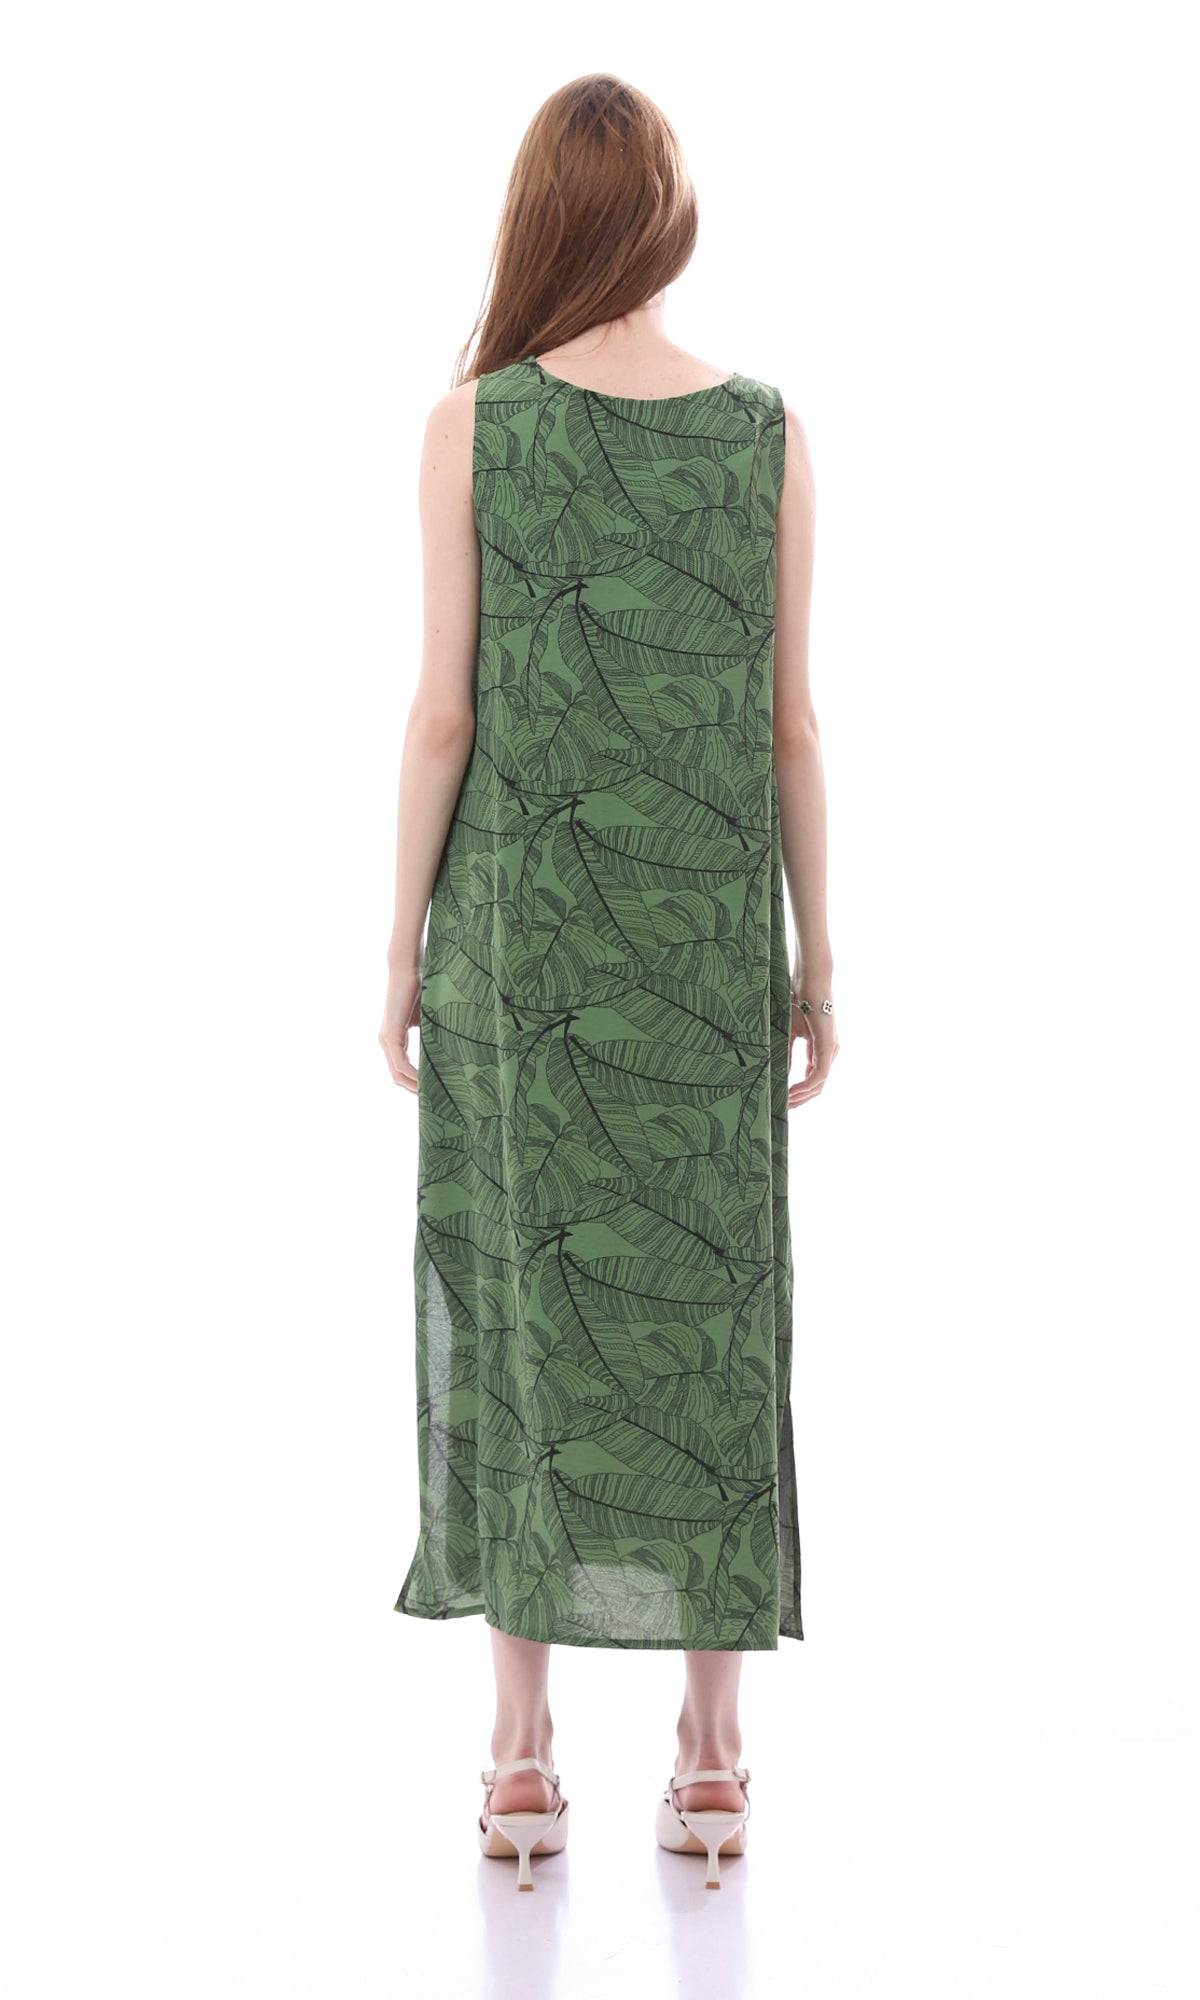 O165061 Comfy Slip On Olive Dress With Side Slits